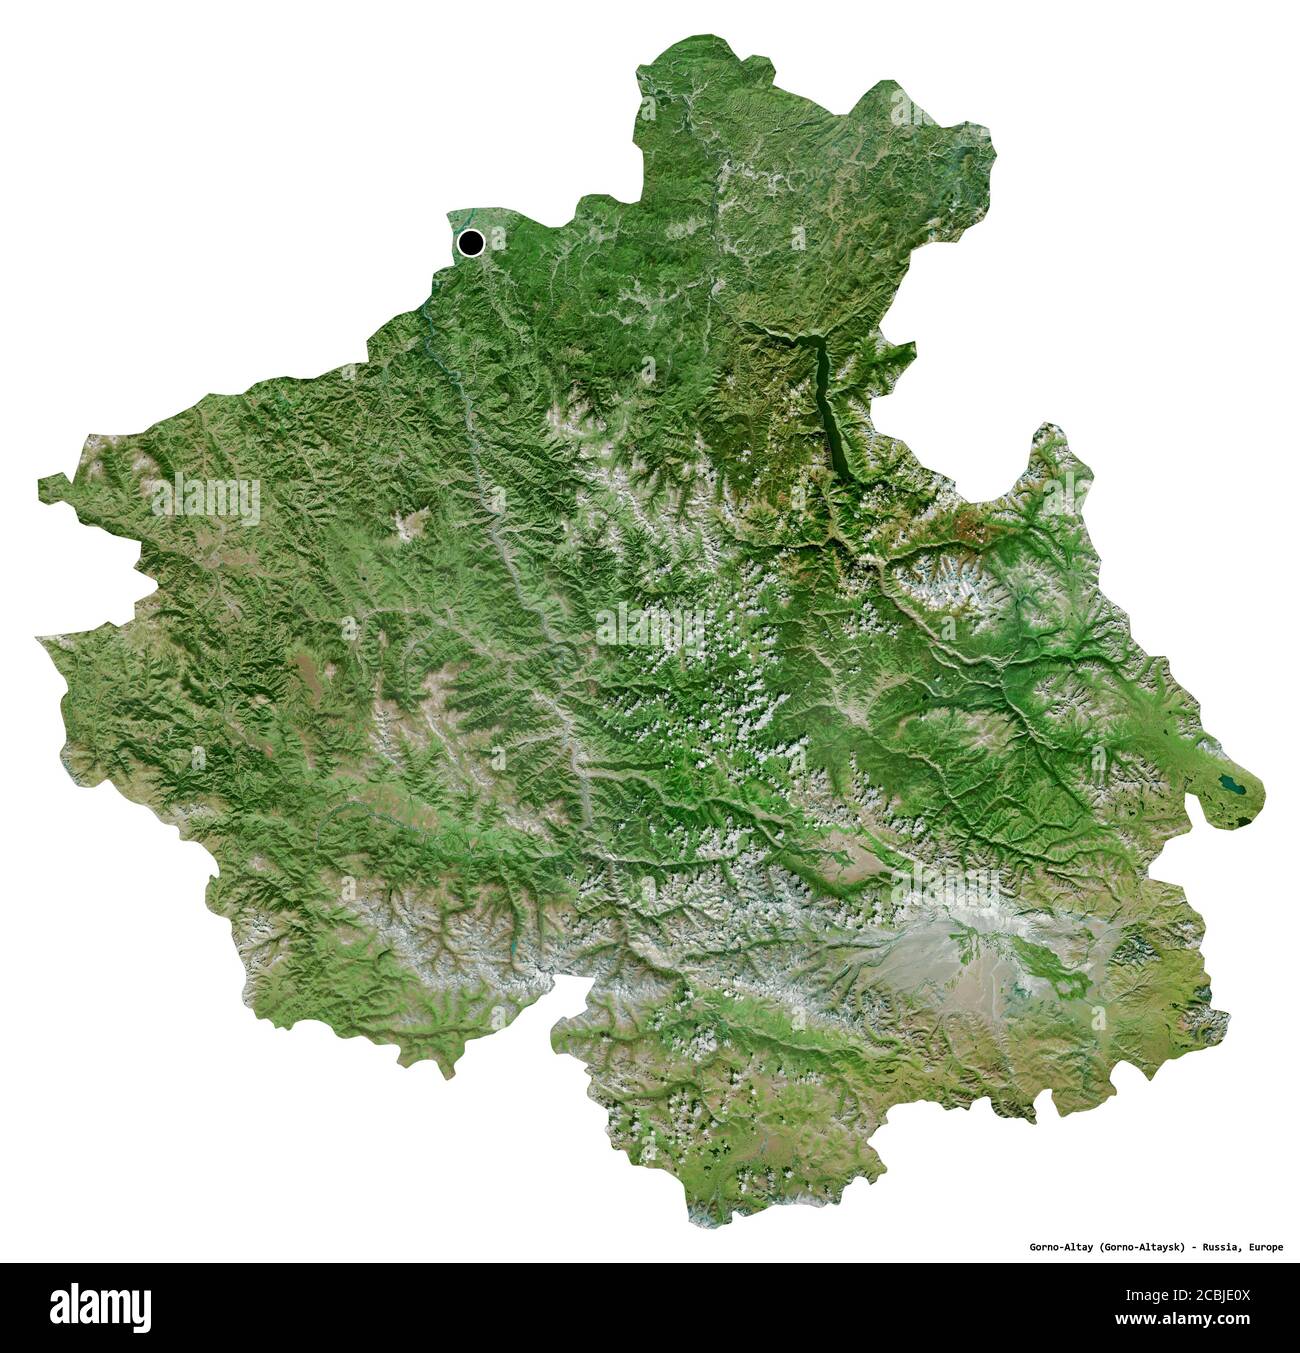 Forme de Gorno-Altay, république de Russie, avec sa capitale isolée sur fond blanc. Imagerie satellite. Rendu 3D Banque D'Images